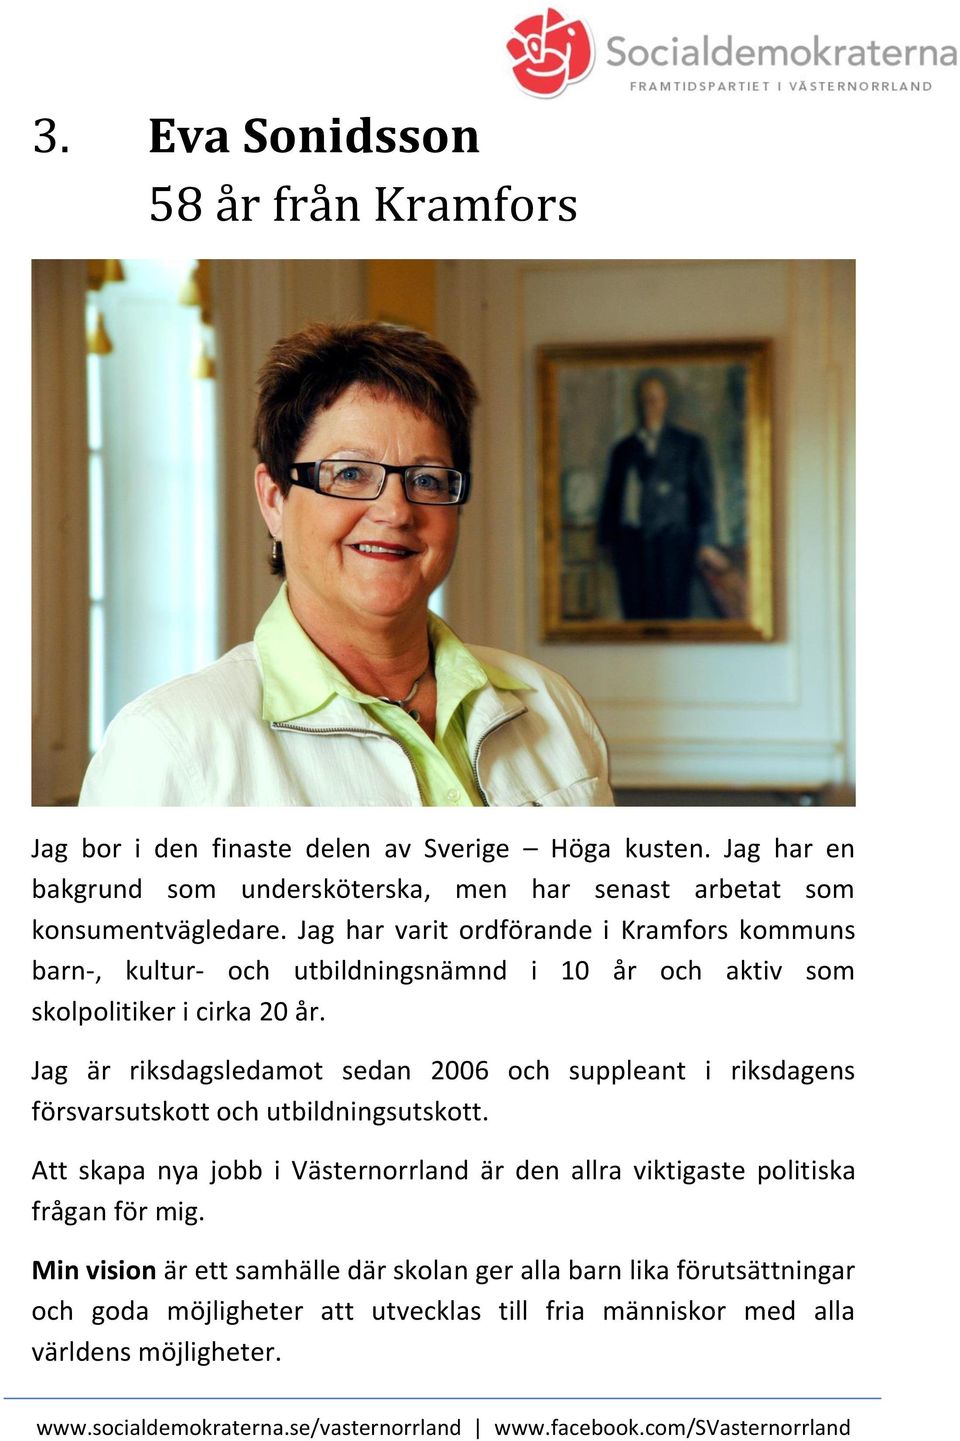 Jag har varit ordförande i Kramfors kommuns barn-, kultur- och utbildningsnämnd i 10 år och aktiv som skolpolitiker i cirka 20 år.